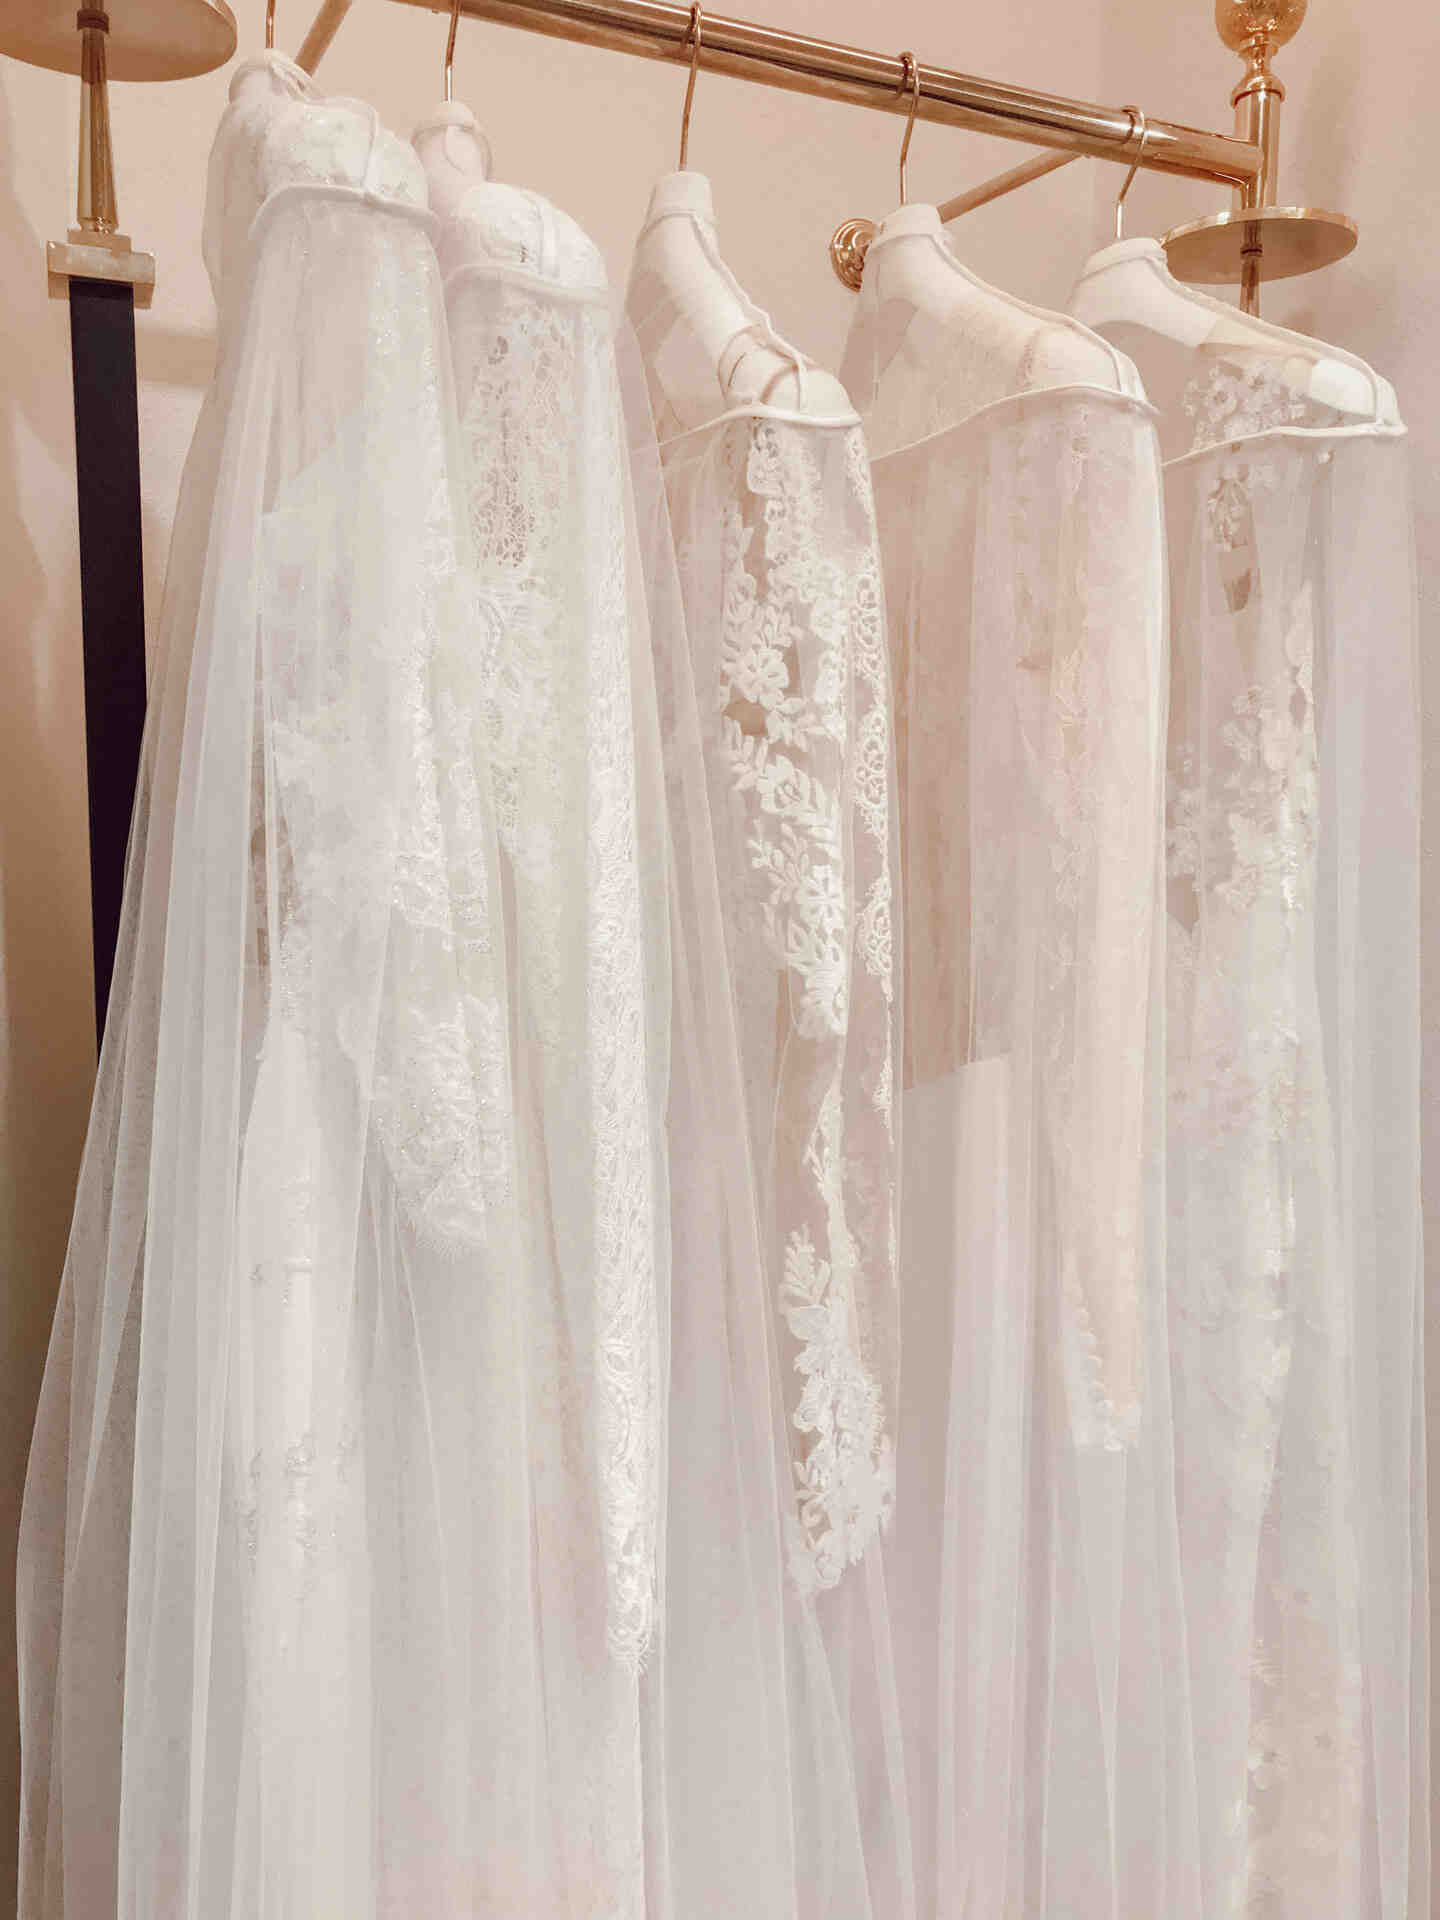 Où acheter des robes de mariée pas chères à Paris?